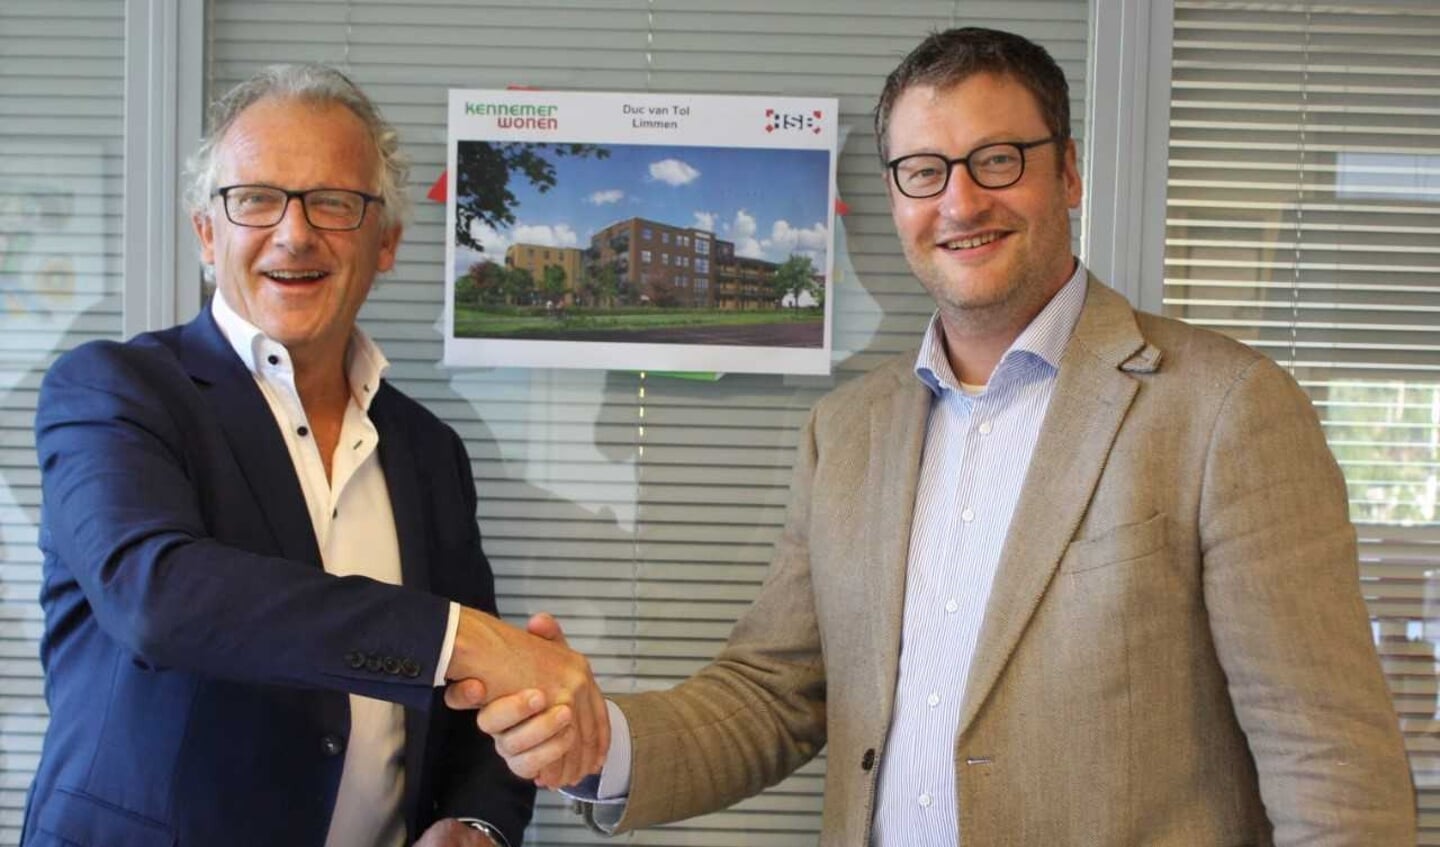 Dick Tromp (directeur-bestuurder Kennemer Wonen) en Camiel Honselaar (directeur HSB Bouw) ondertekenden de turnkey-overeenkomst voor Duc van Tol